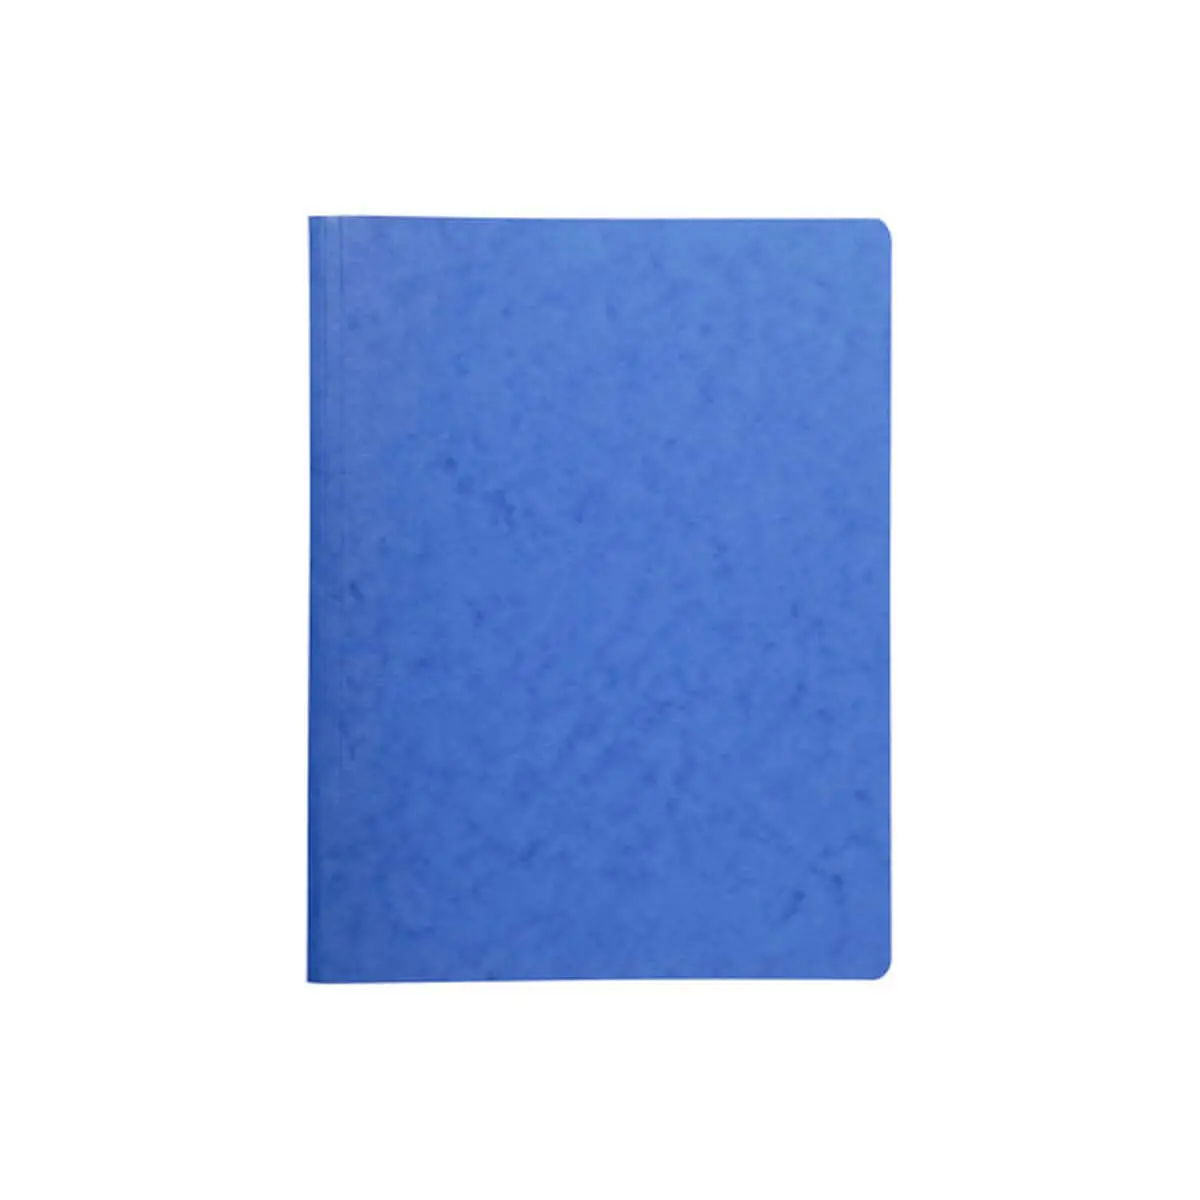 Chemise à ressort carte lustrée 425gm² - A4 - Bleu - EXACOMPTA photo du produit